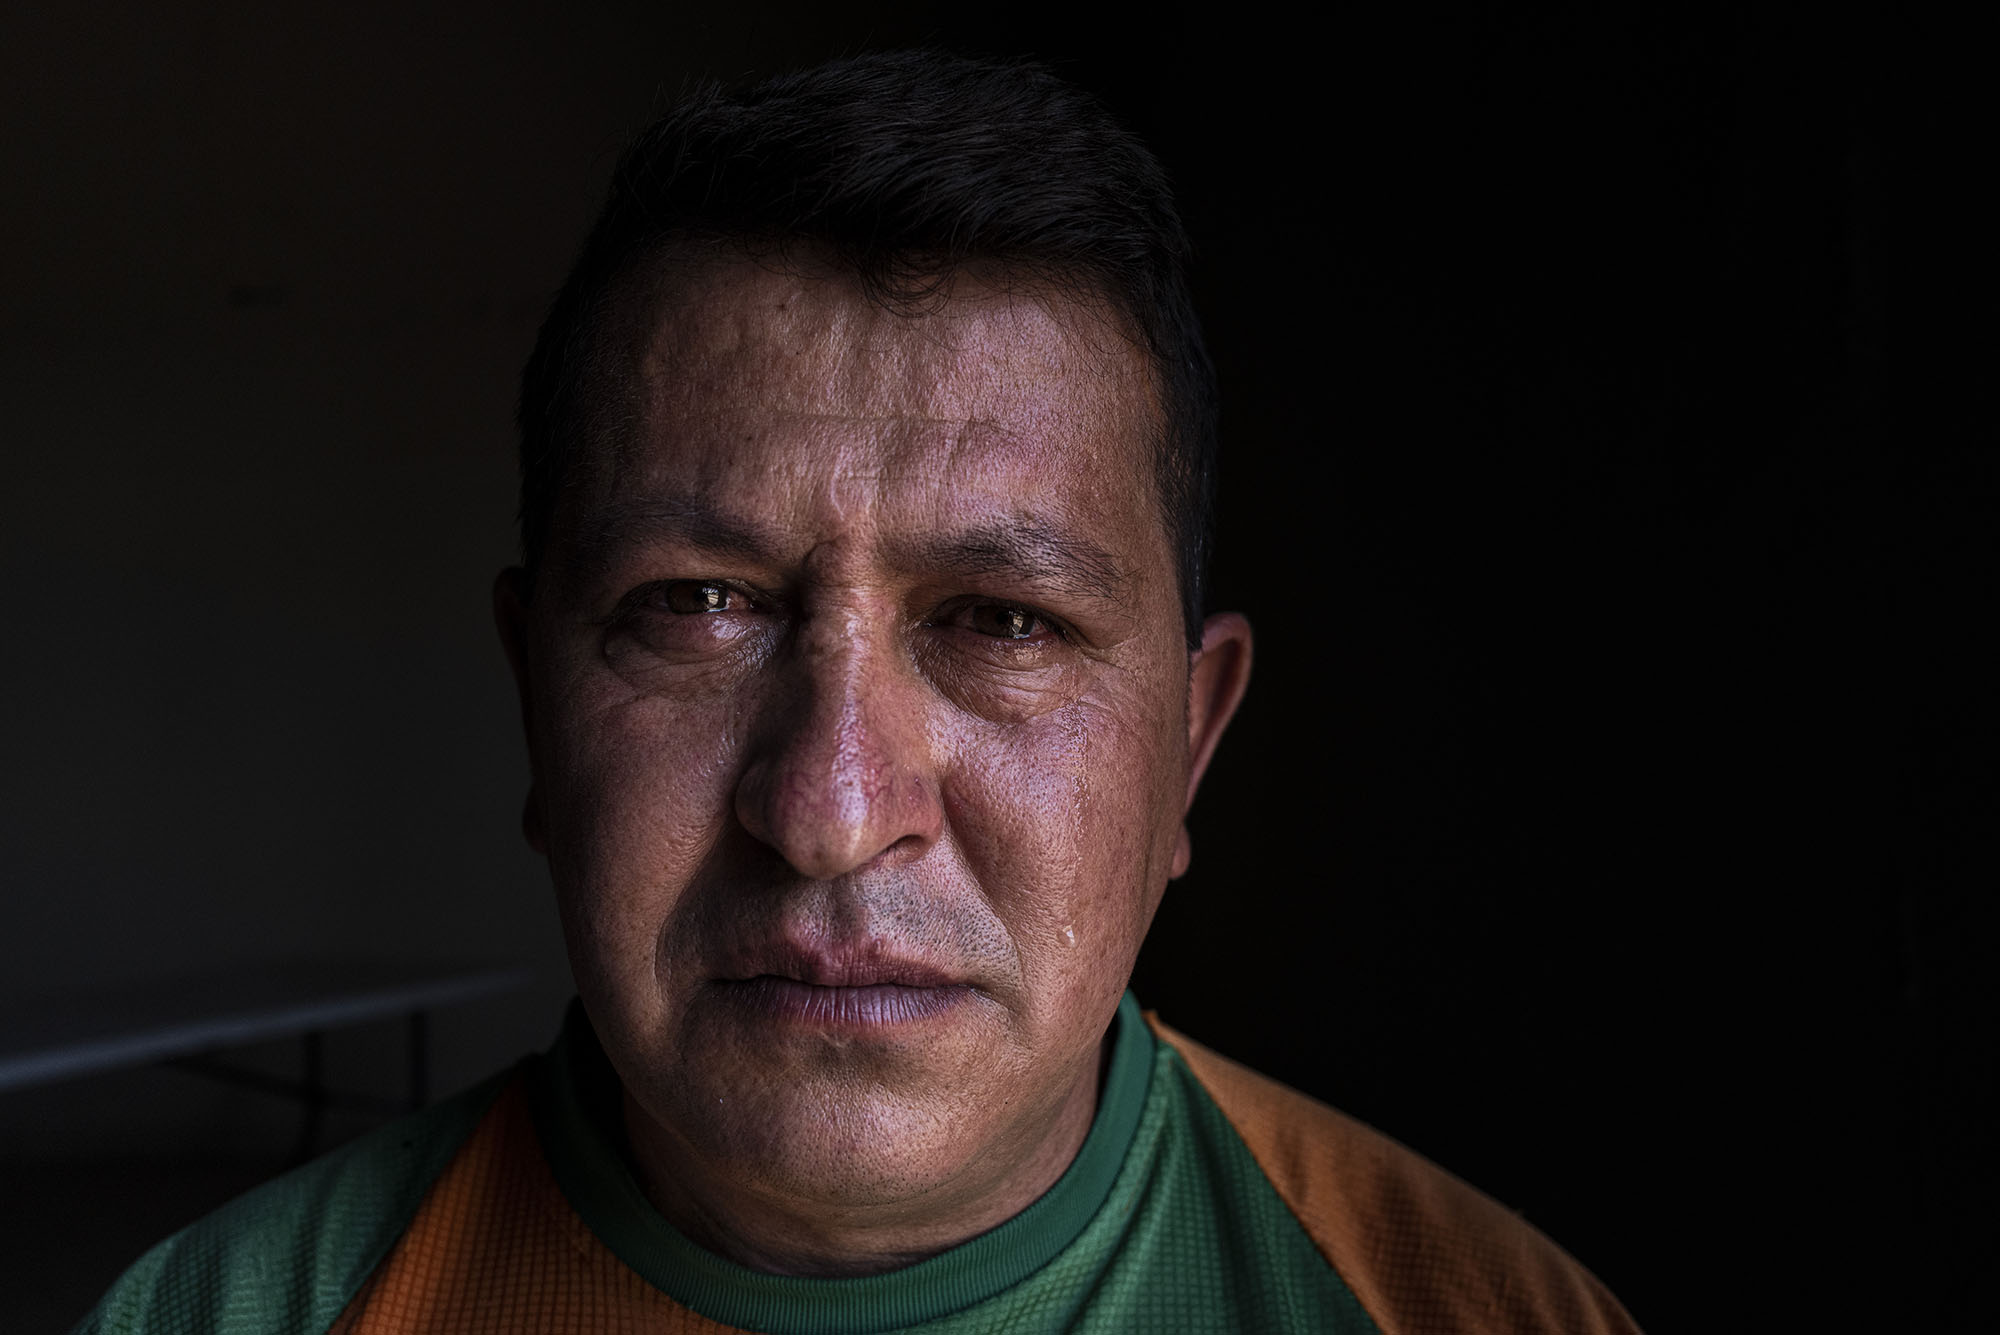 49 歲的弗雷迪‧阿爾貝托‧帕邦在他的母親和兄弟去世後離開了委內瑞拉。他正在為自己和其他家人尋求美國的政治庇護。